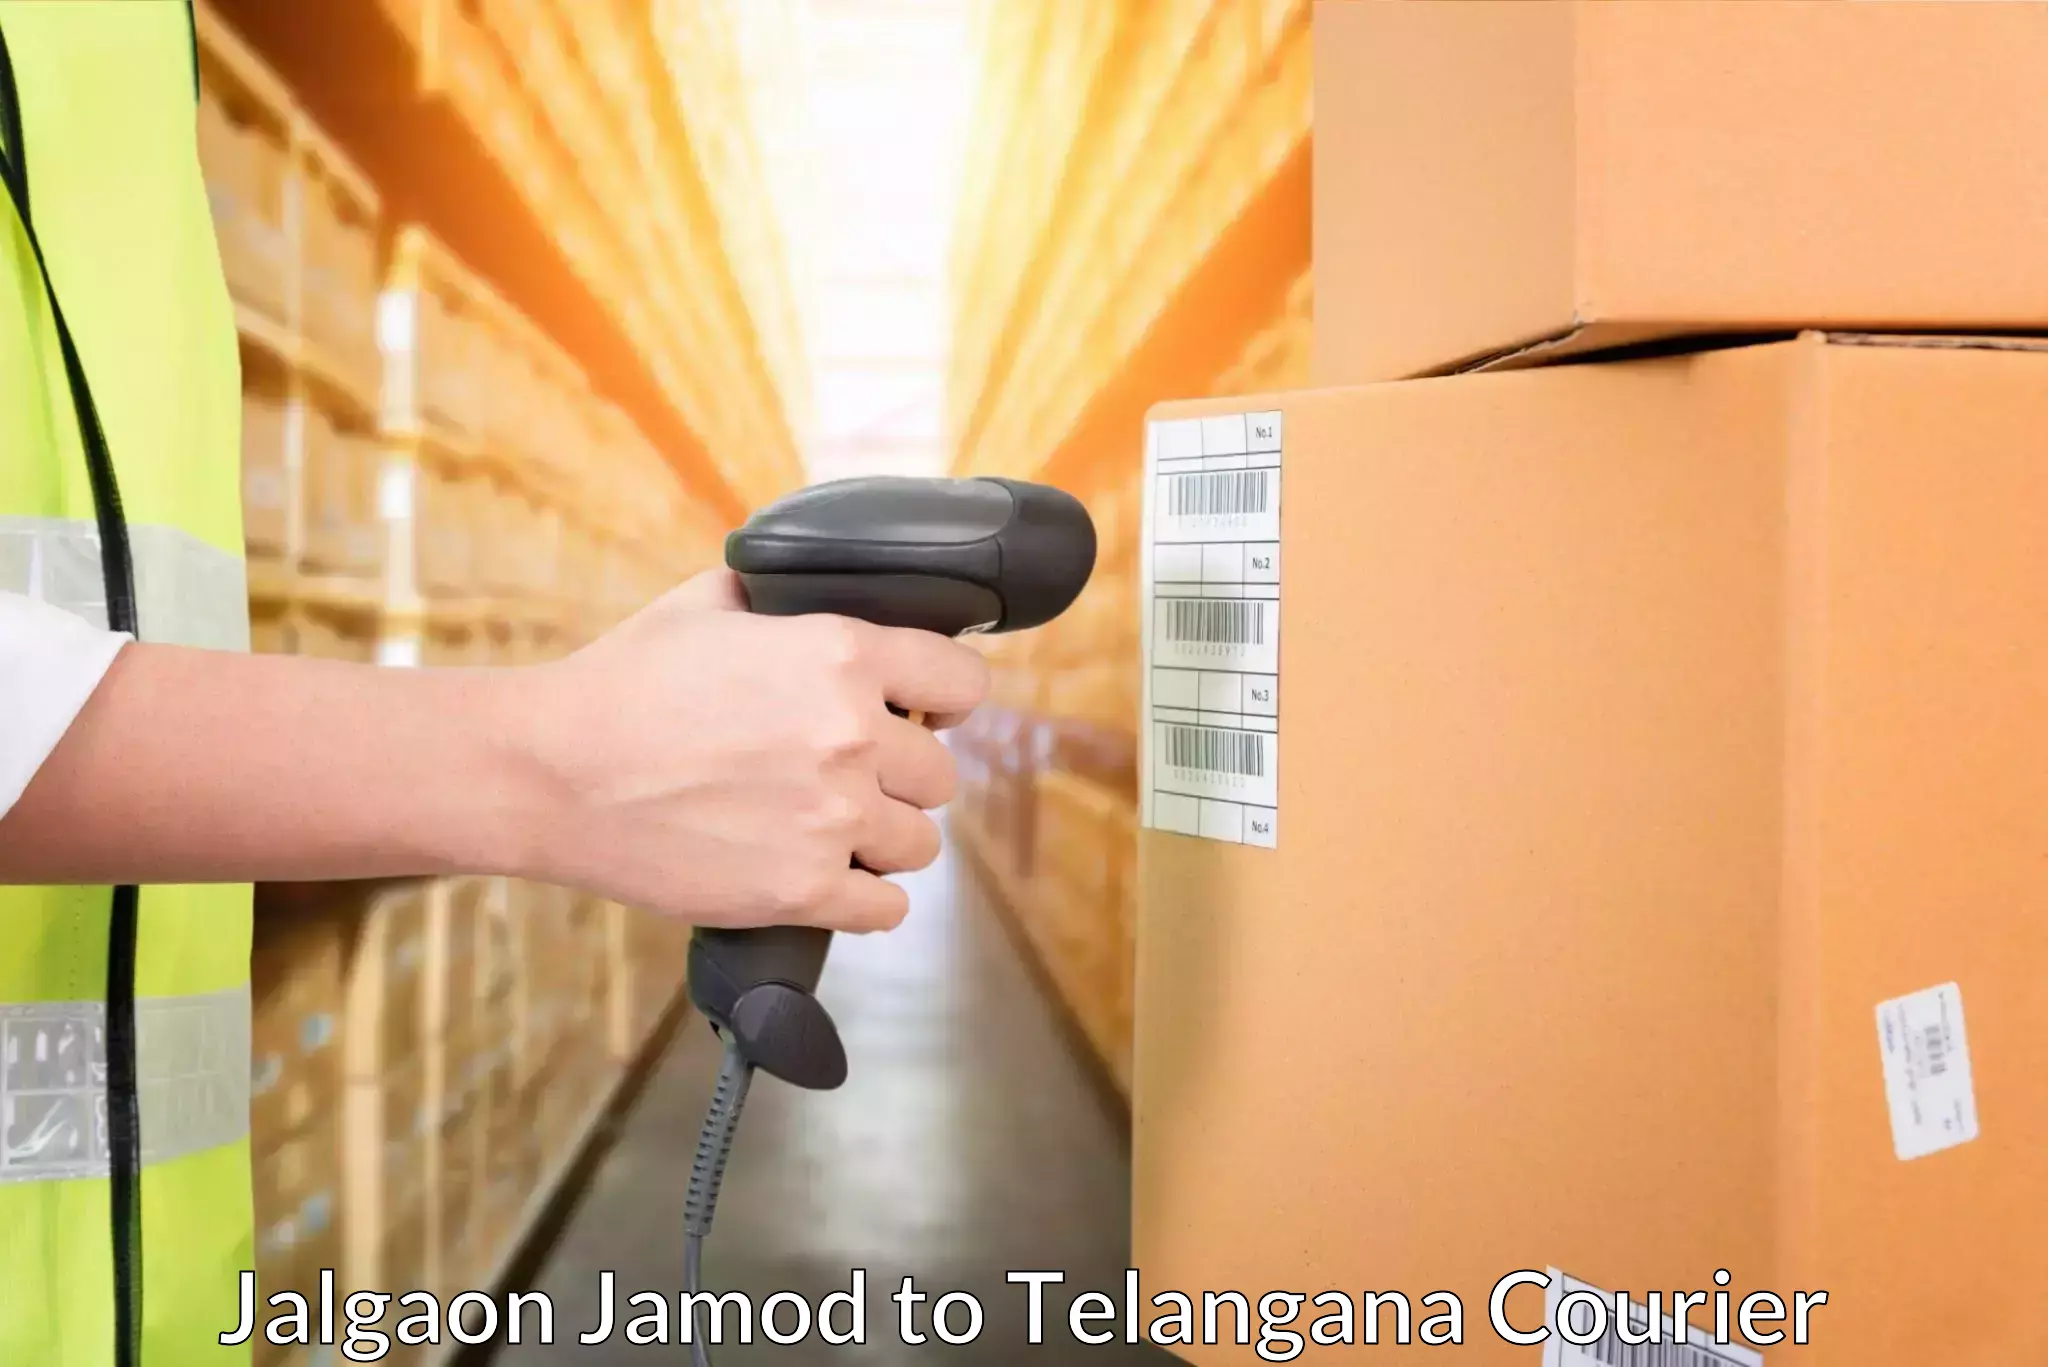 Express package handling Jalgaon Jamod to Nizamabad